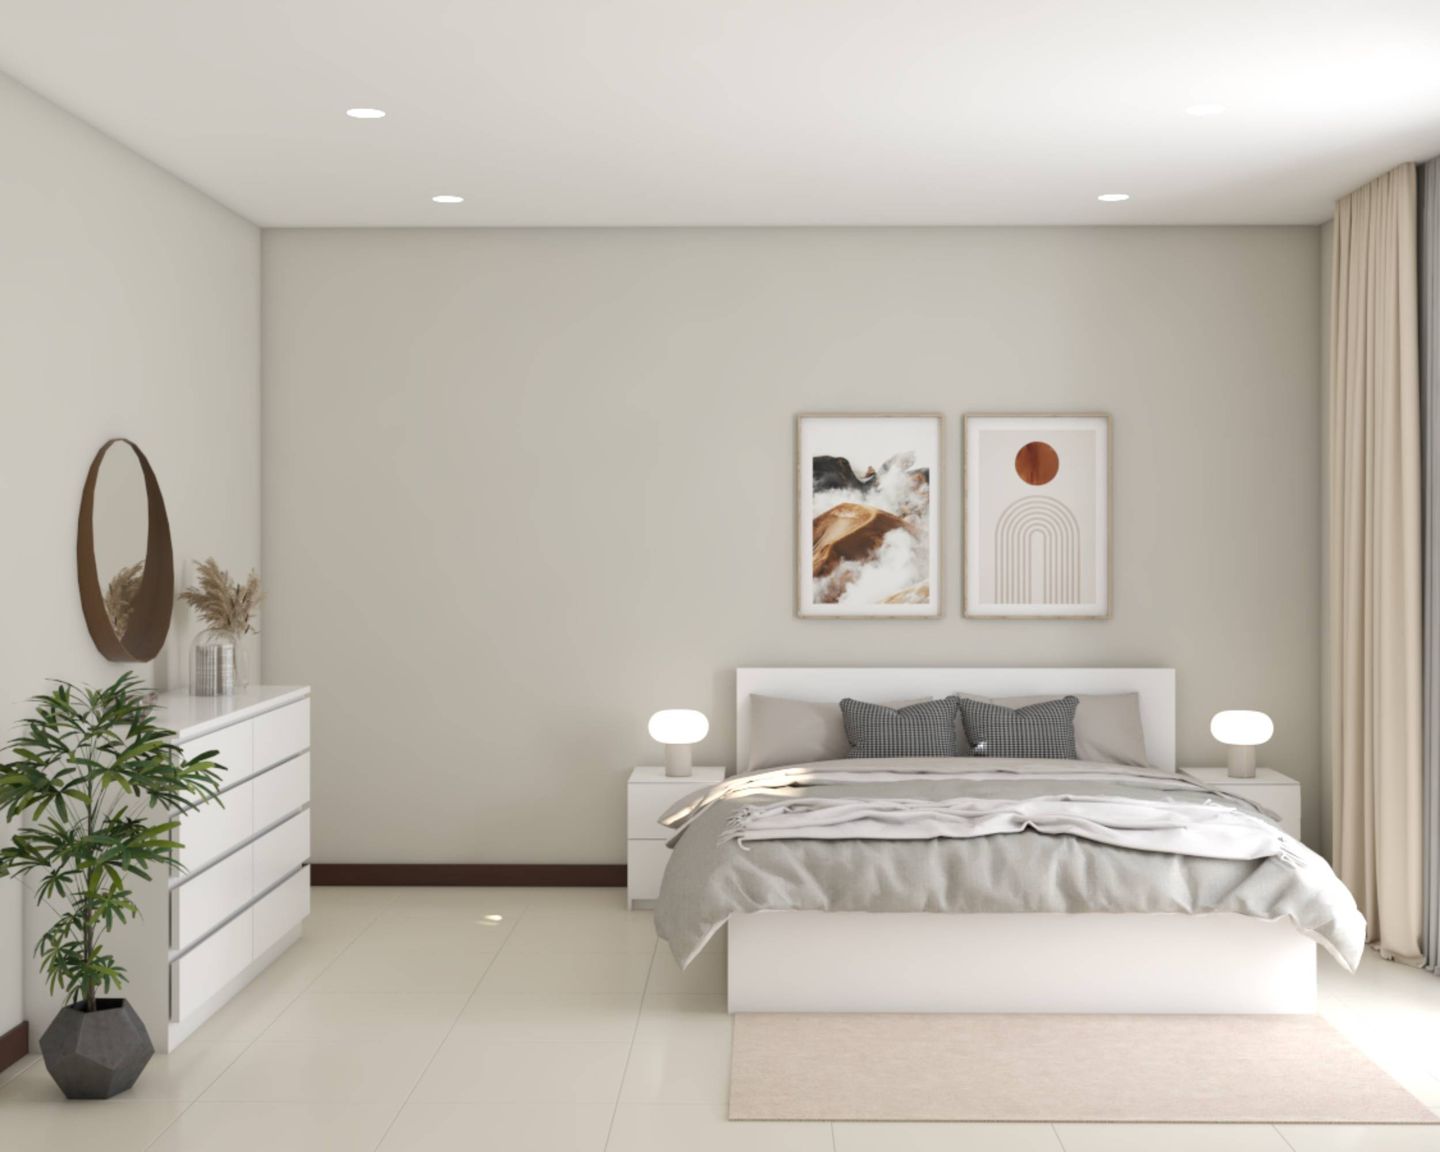 All-White Master Bedroom Design - Livspace